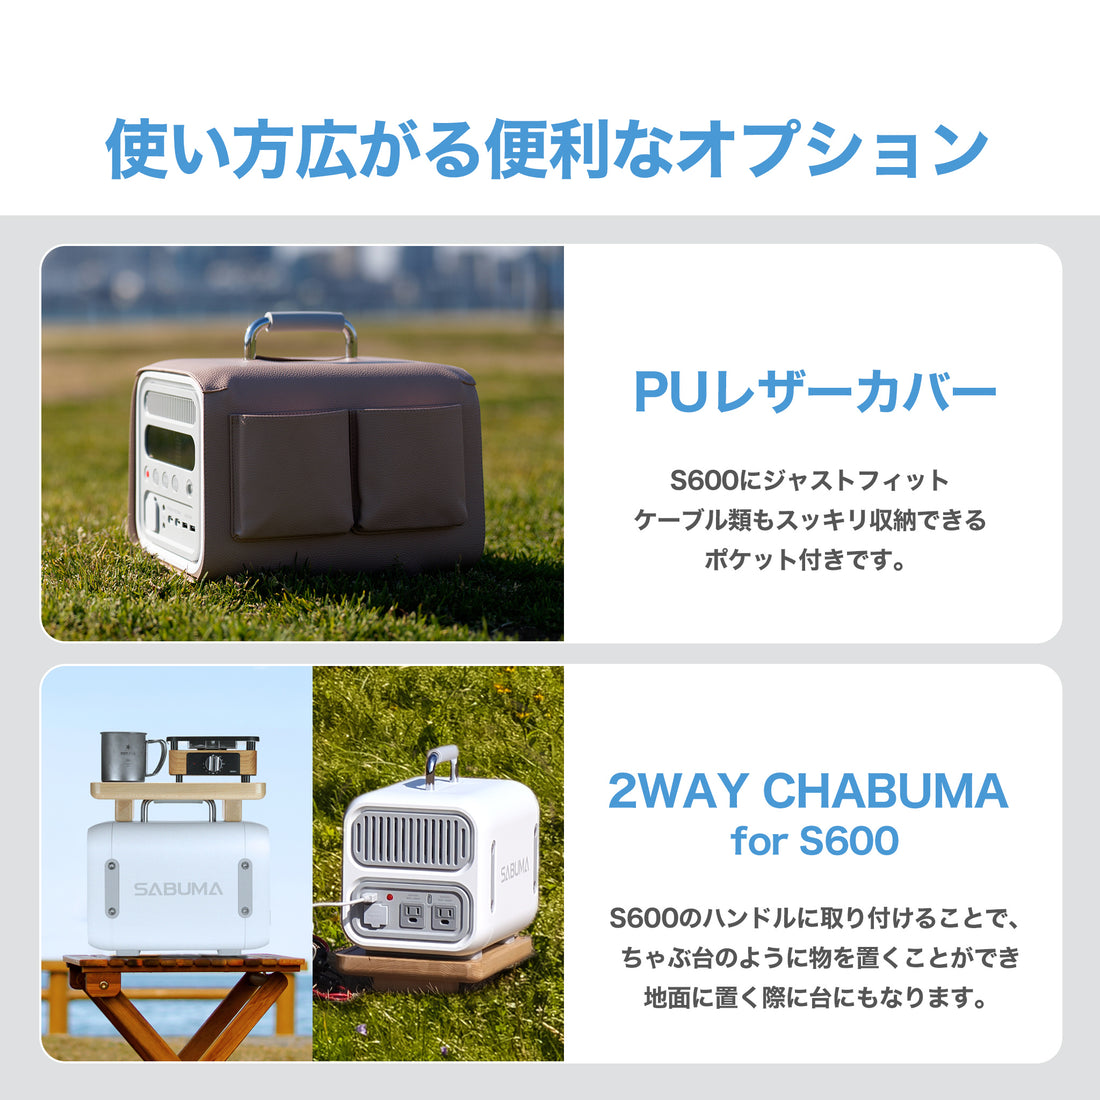 新商品】SABUMA ポータブル電源 S600 – SABUMA公式ストア